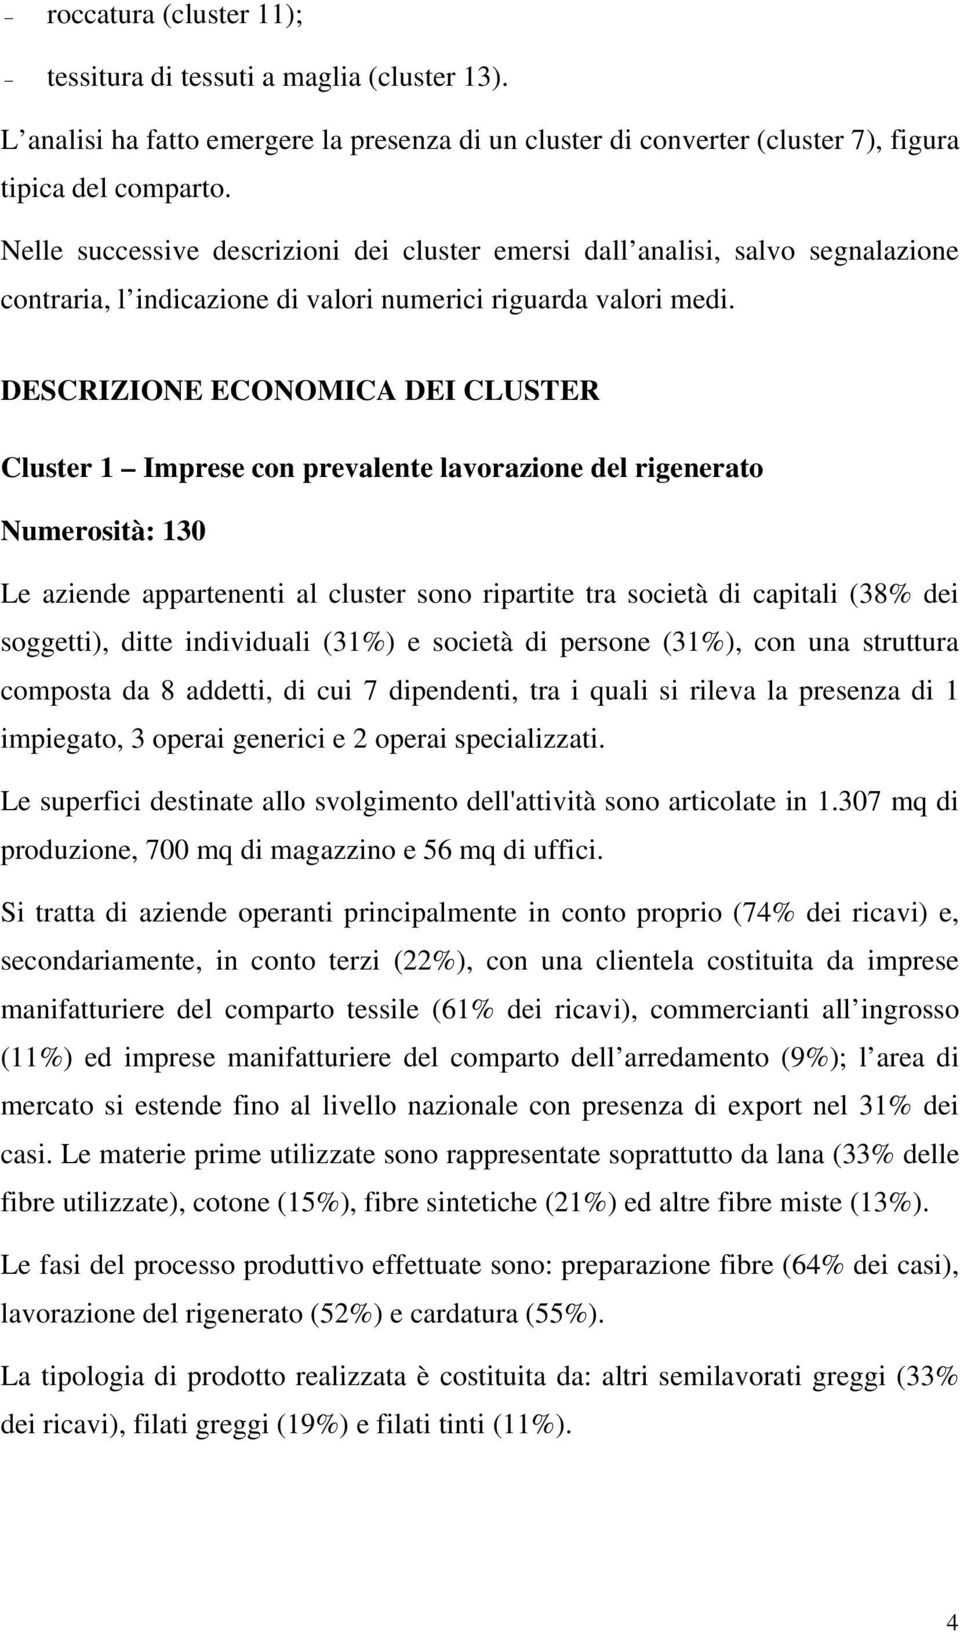 DESCRIZIONE ECONOMICA DEI CLUSTER Cluster 1 Imprese con prevalente lavorazione del rigenerato Numerosità: 130 Le aziende appartenenti al cluster sono ripartite tra società di capitali (38% dei